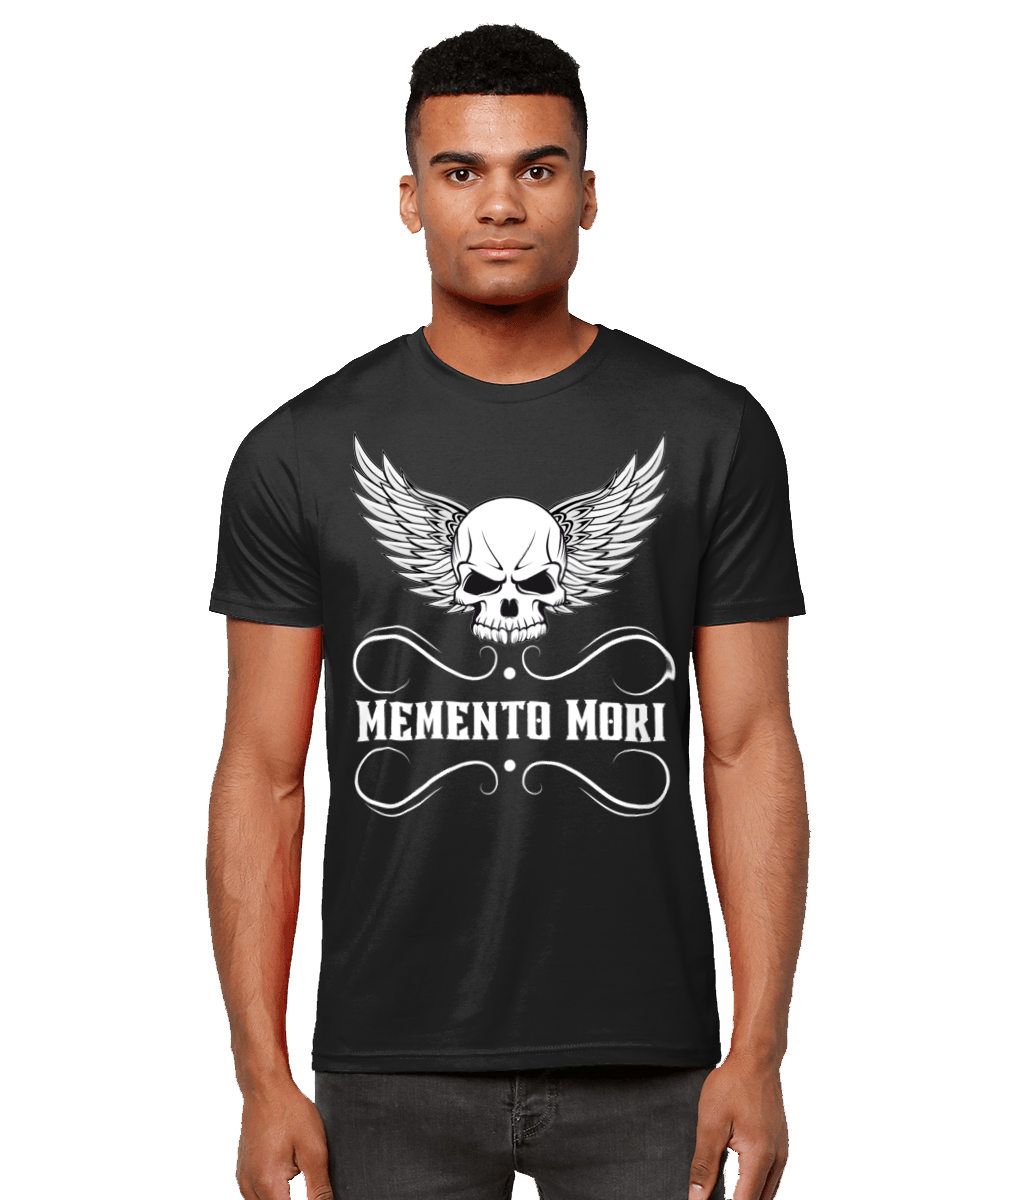 Memento Mori Catholic Black T Shirt